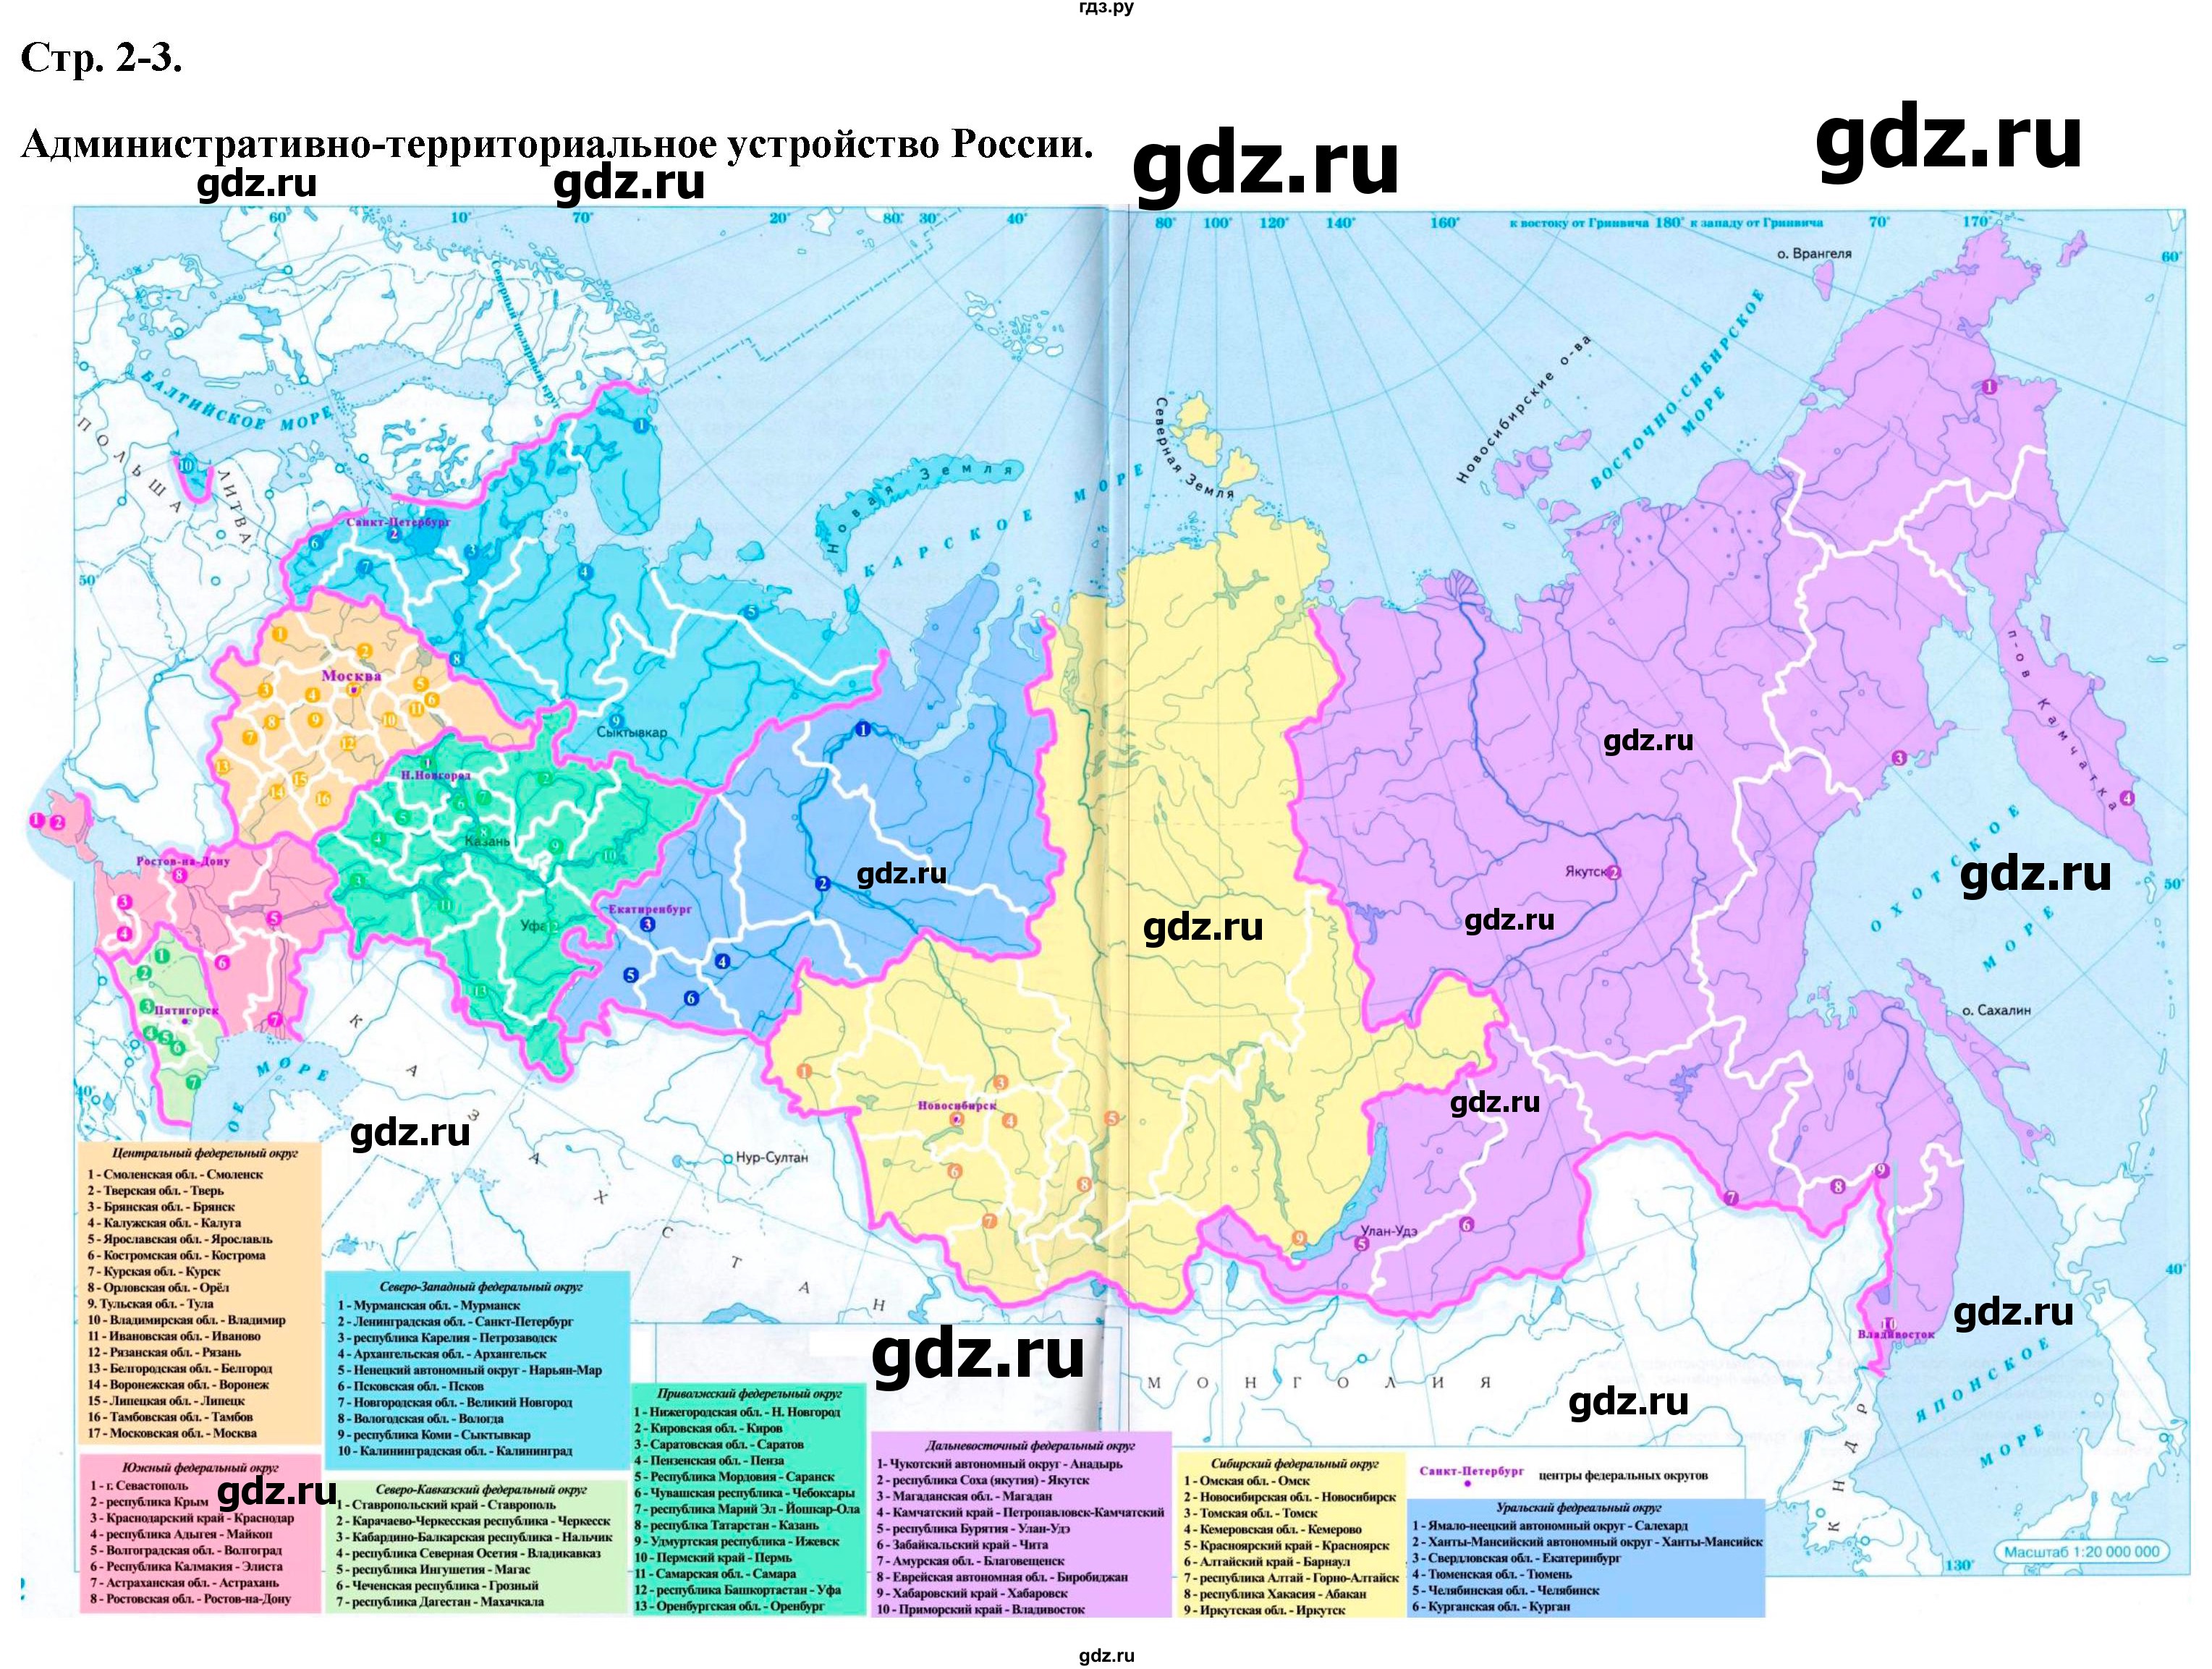 ГДЗ контурные карты стр.2-3 география 9 класс атлас с контурными картамиПриваловский, Курбский